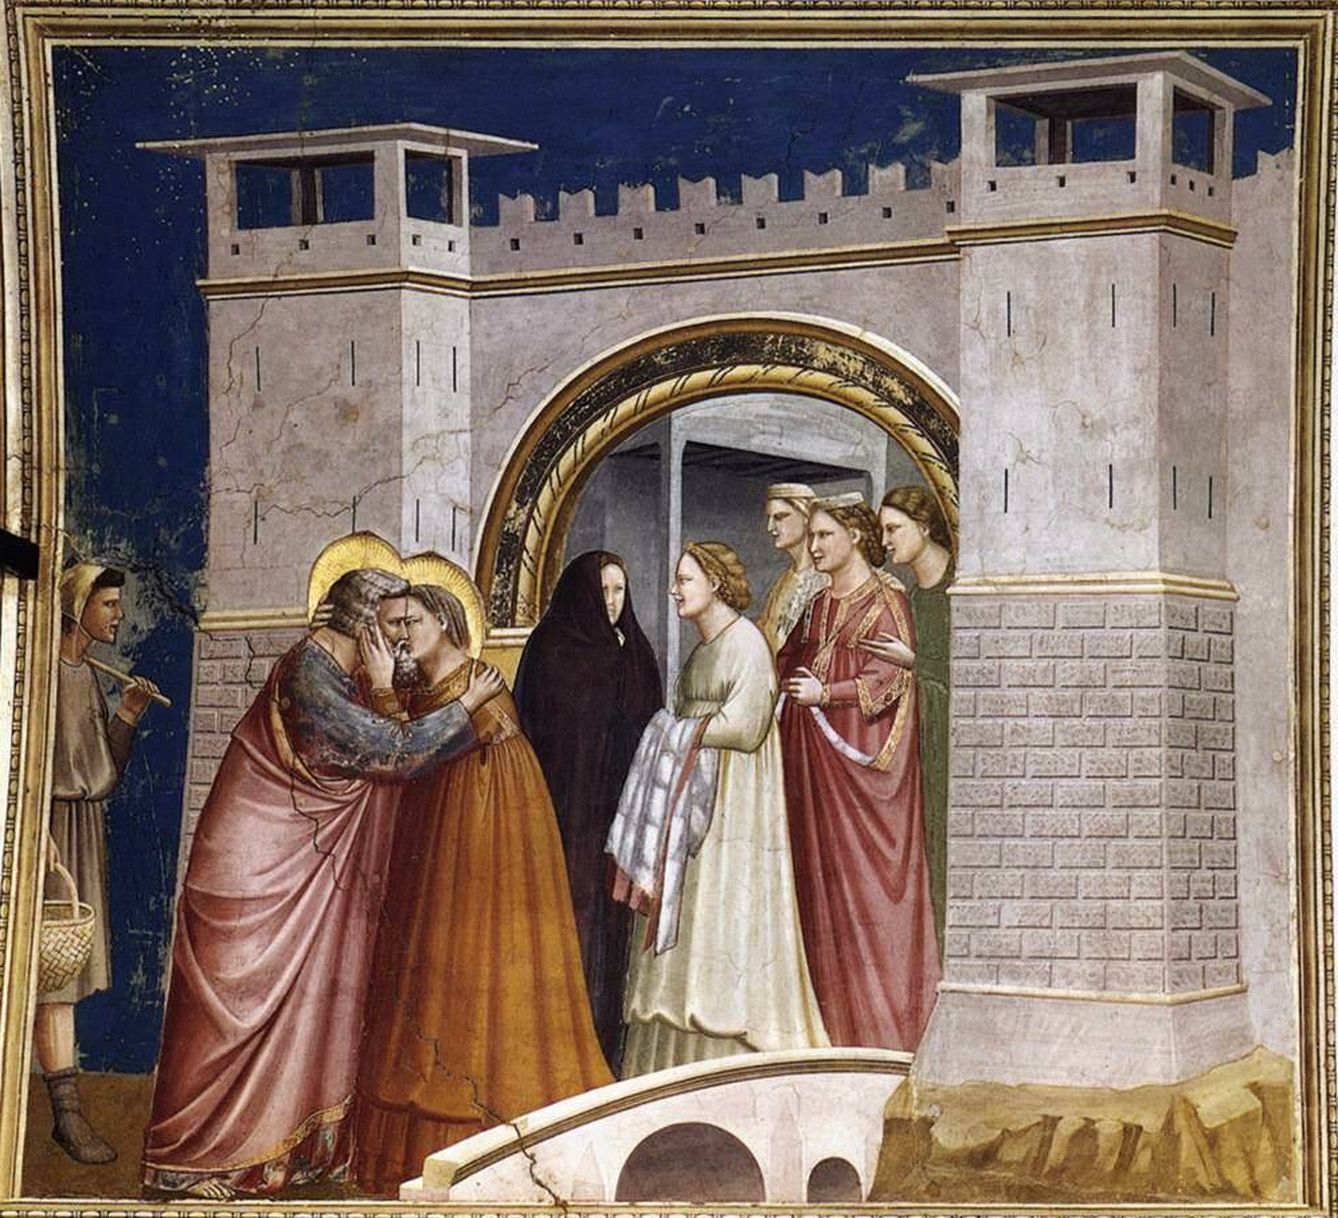 Abrazo ante la Puerta Dorada. Giotto. 1305. Capilla Scrovegni. Padua.